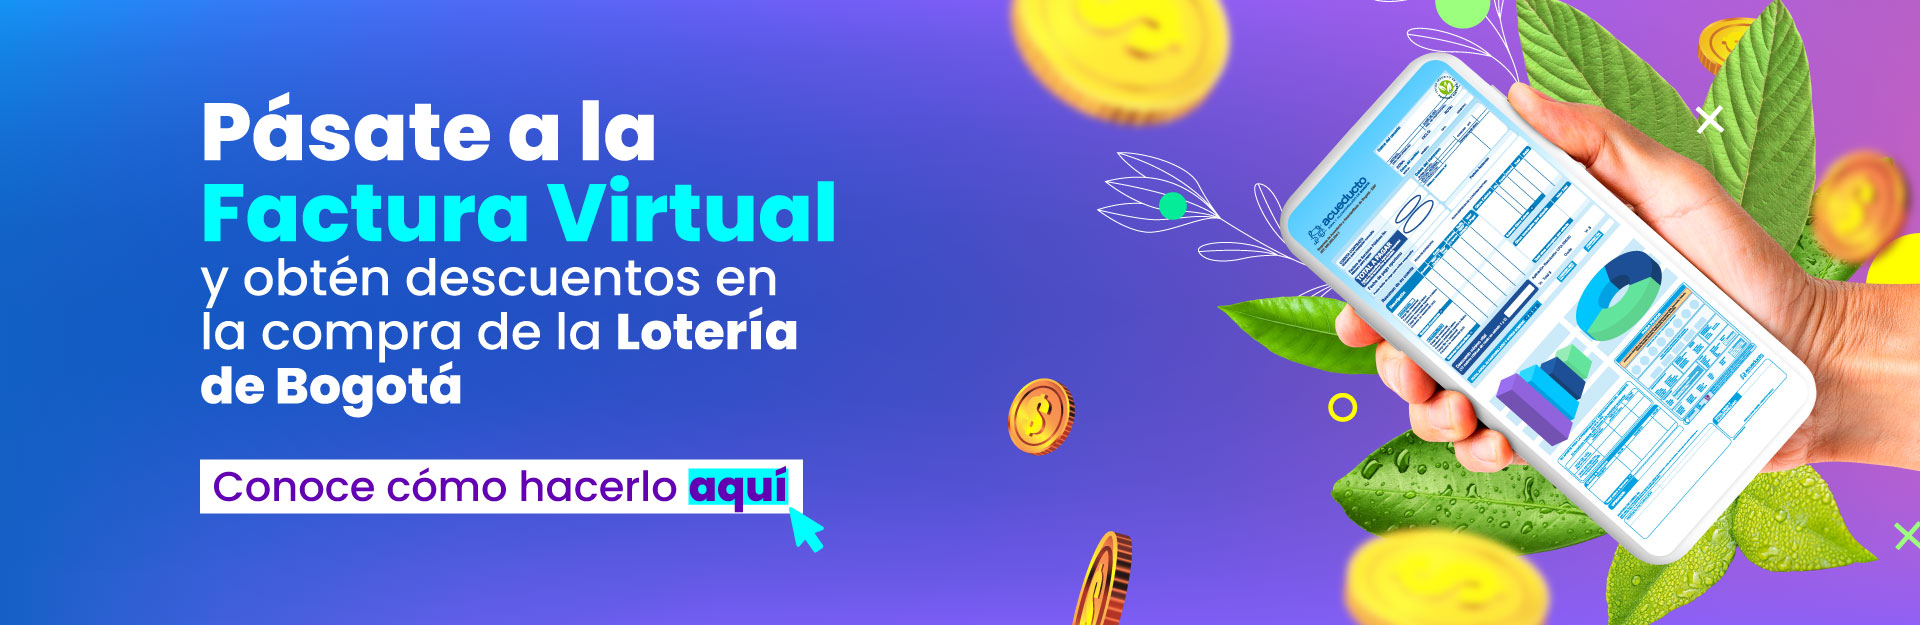 Pásate a la factura virtual y obtén descuentos en la compra de Lotería de Bogotá